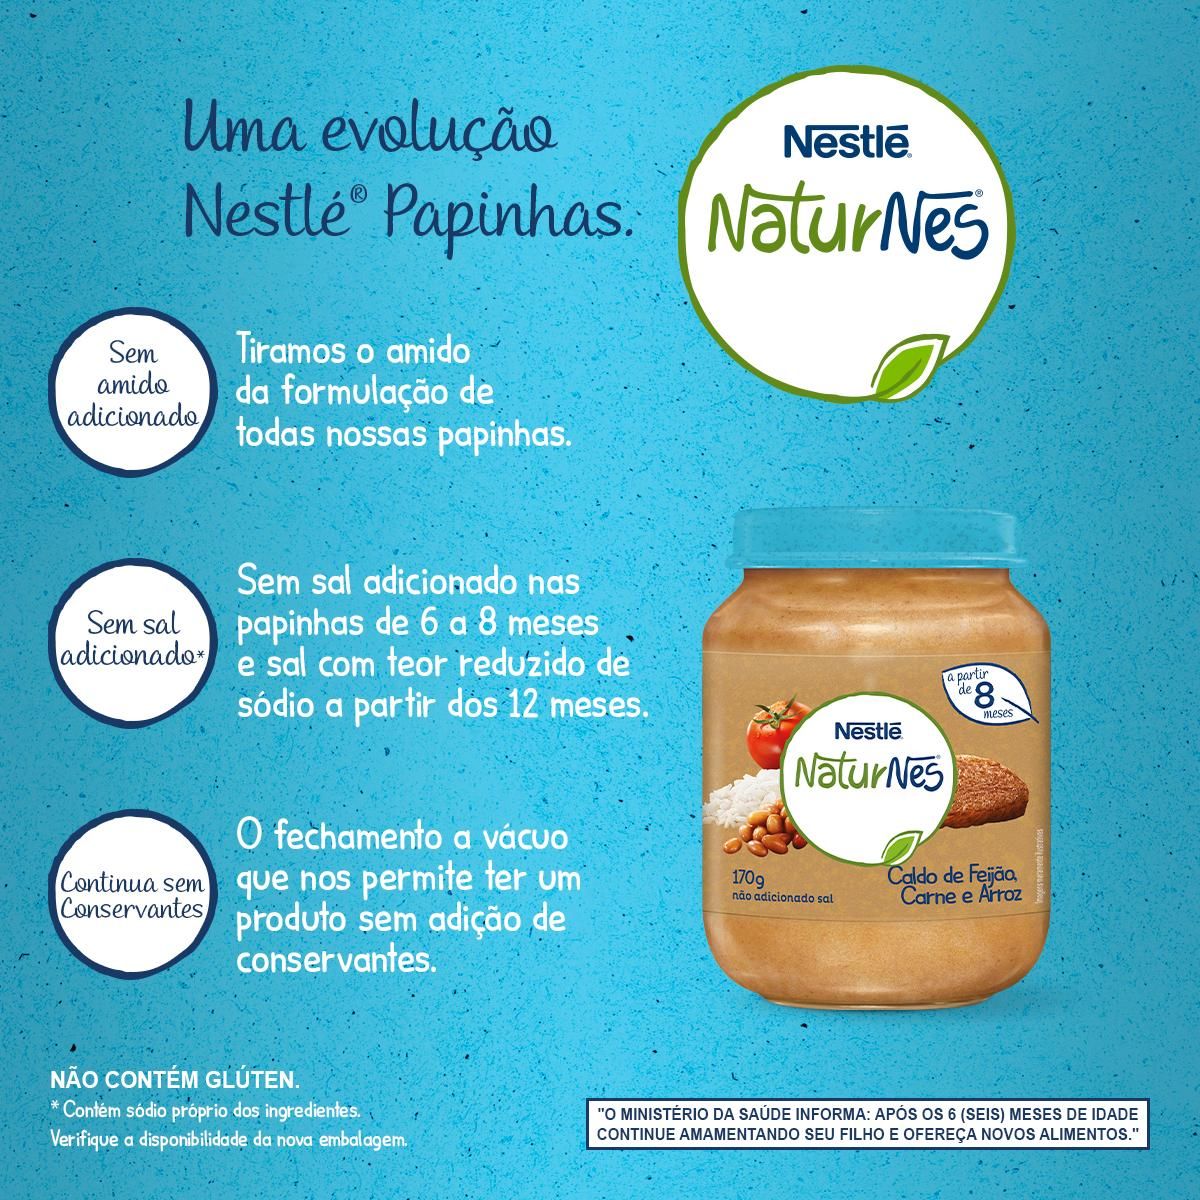 Papinha Nestlé Naturnes Caldo de Feijão, Carne e Arroz 170g image number 4